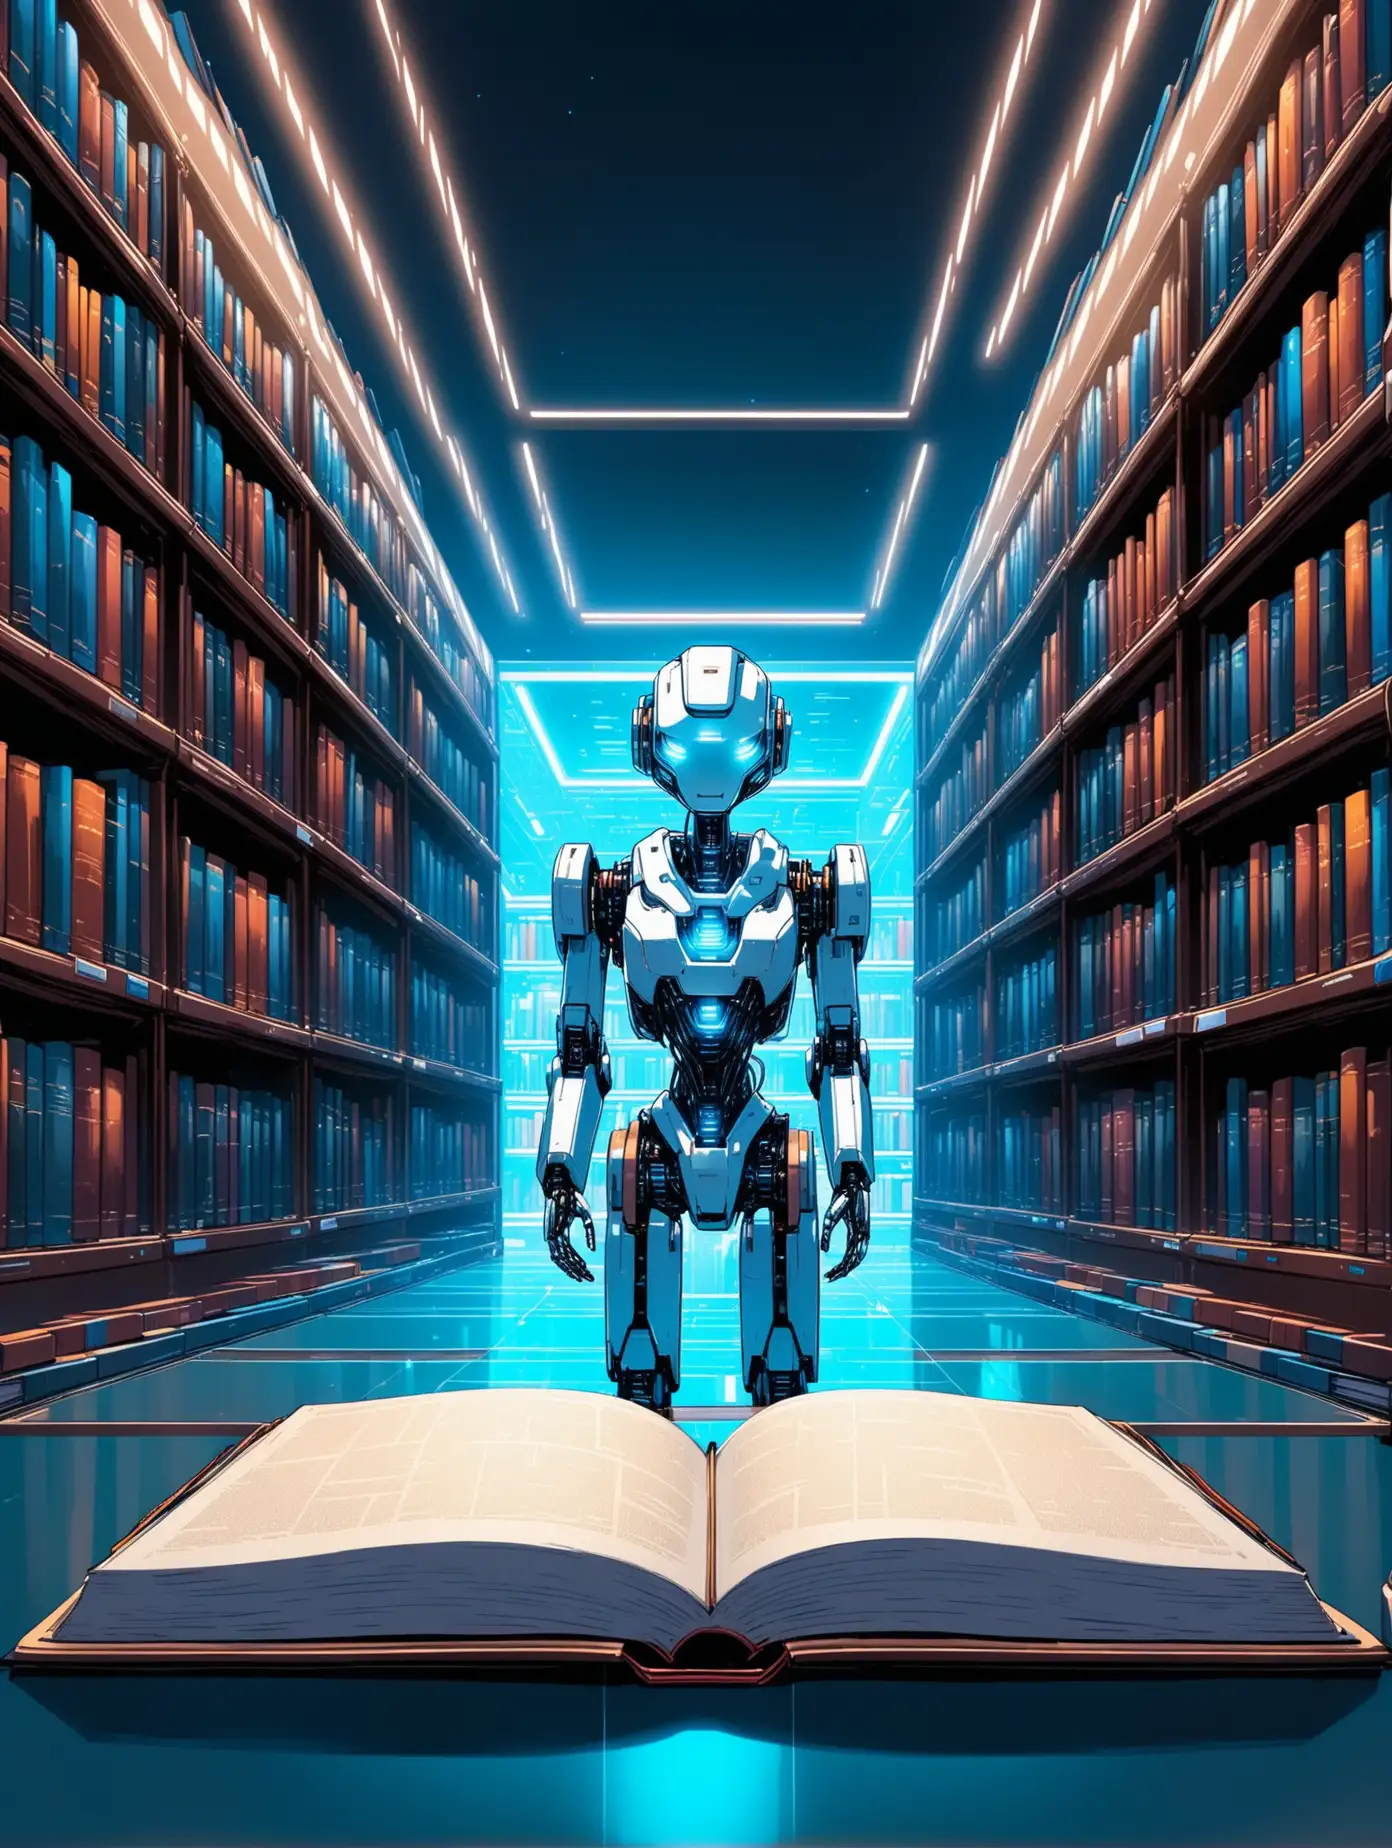 Futuristic AI Robot Exploring a HighTech Library